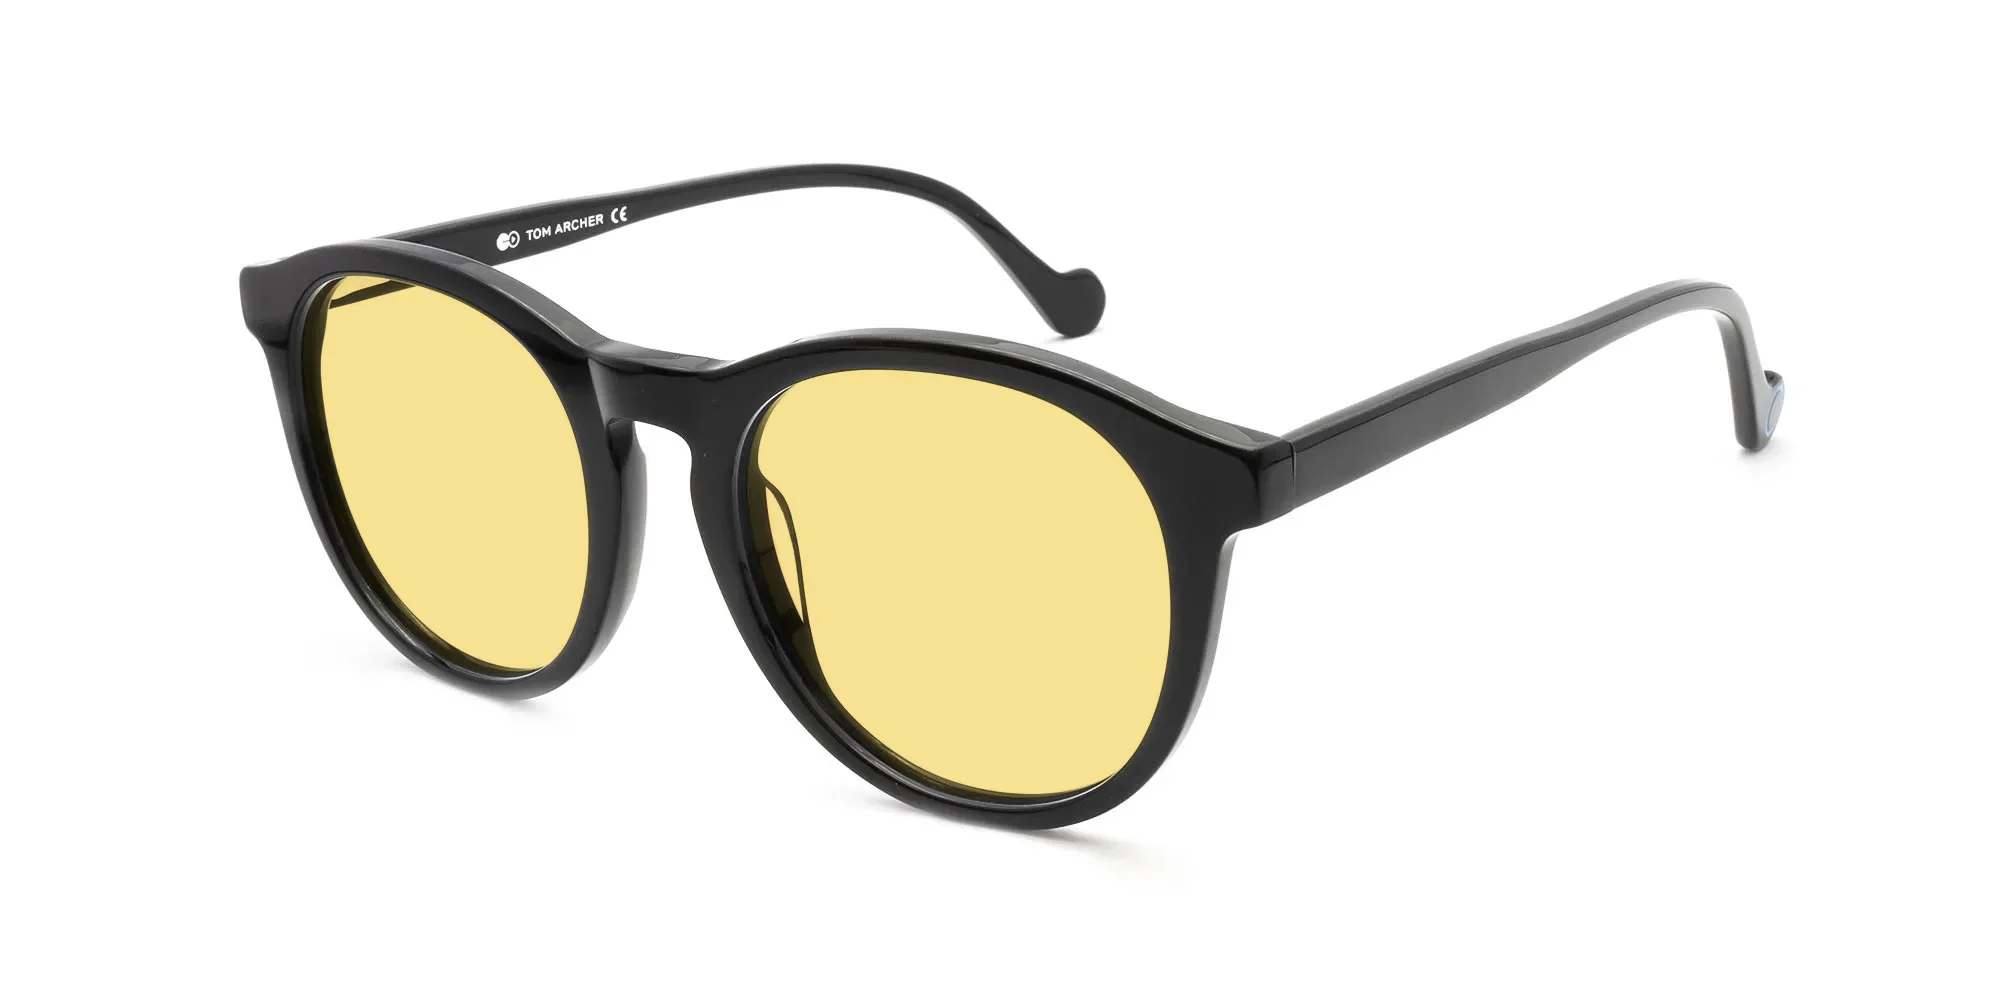 Black Frame Yellow Lens Sunglasses